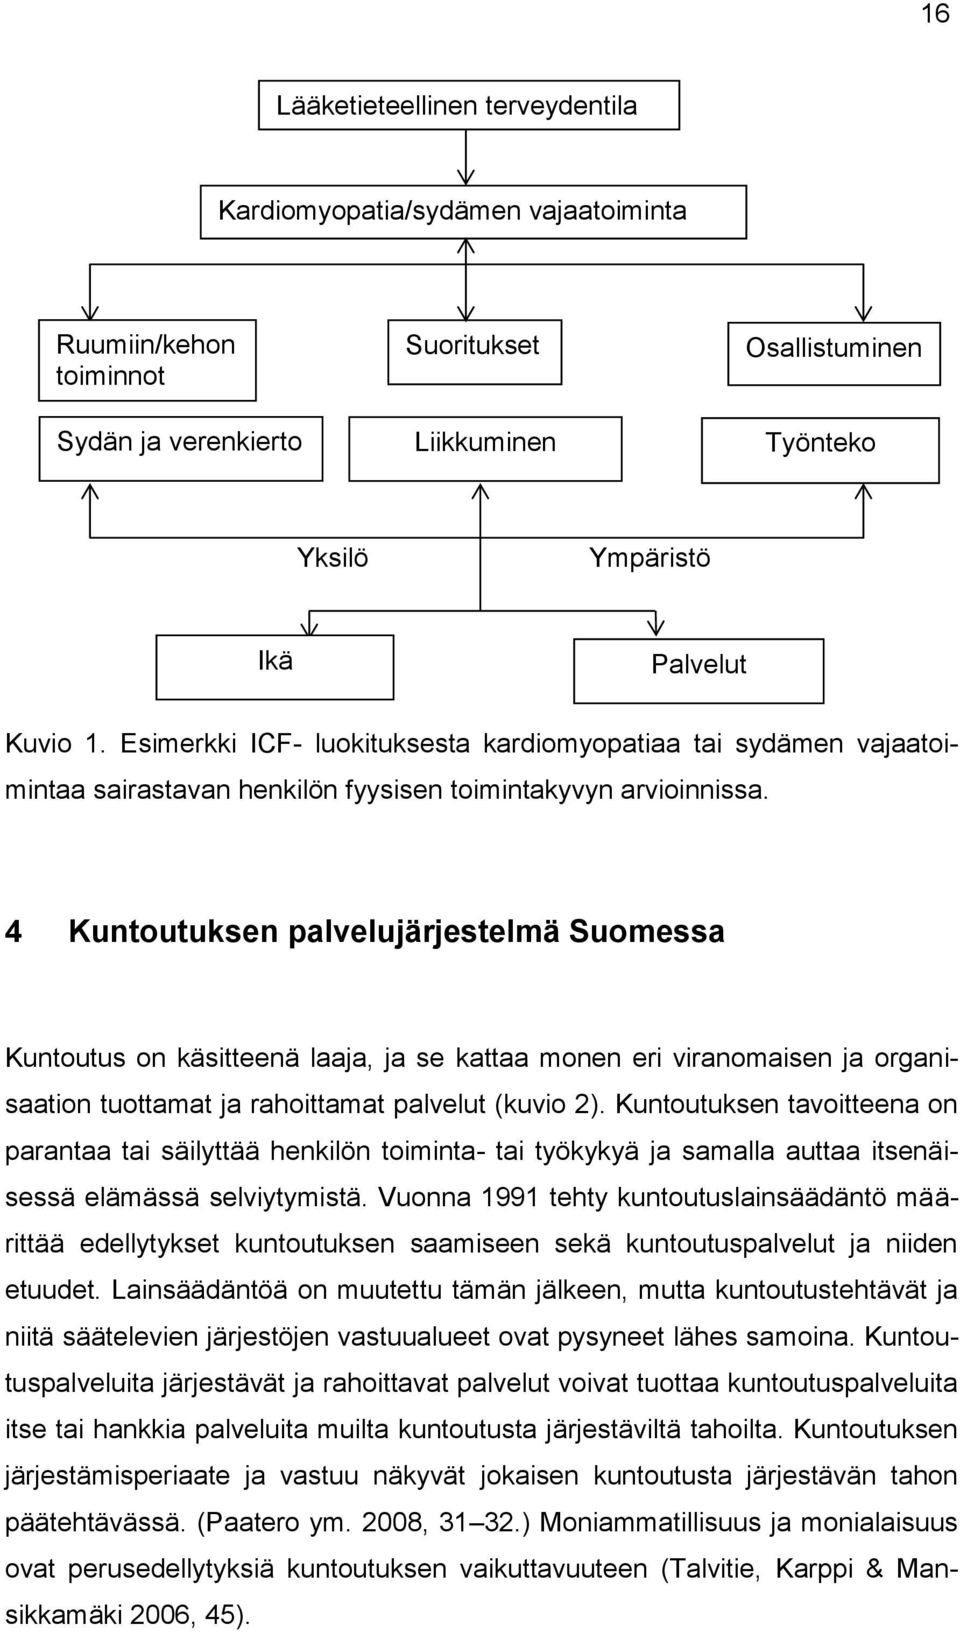 4 Kuntoutuksen palvelujärjestelmä Suomessa Kuntoutus on käsitteenä laaja, ja se kattaa monen eri viranomaisen ja organisaation tuottamat ja rahoittamat palvelut (kuvio 2).